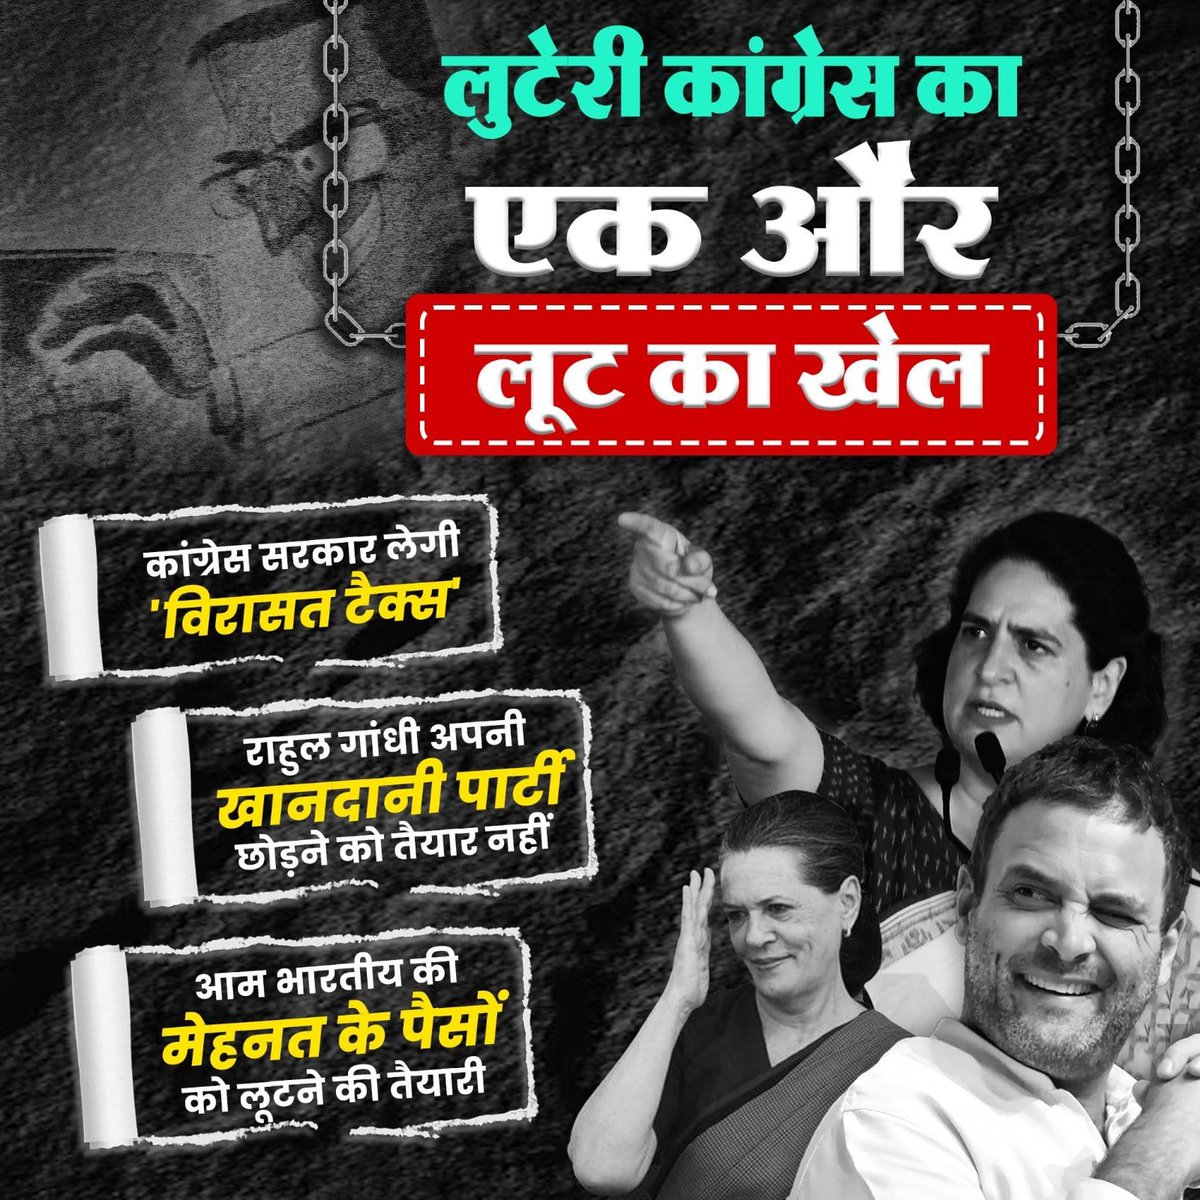 कांग्रेस का खेल अनोखा! हिंदुओं की मेहनत की कमाई लूटकर उन्हीं को देगी धोखा... #CongressMuktBharat #InheritenceTax